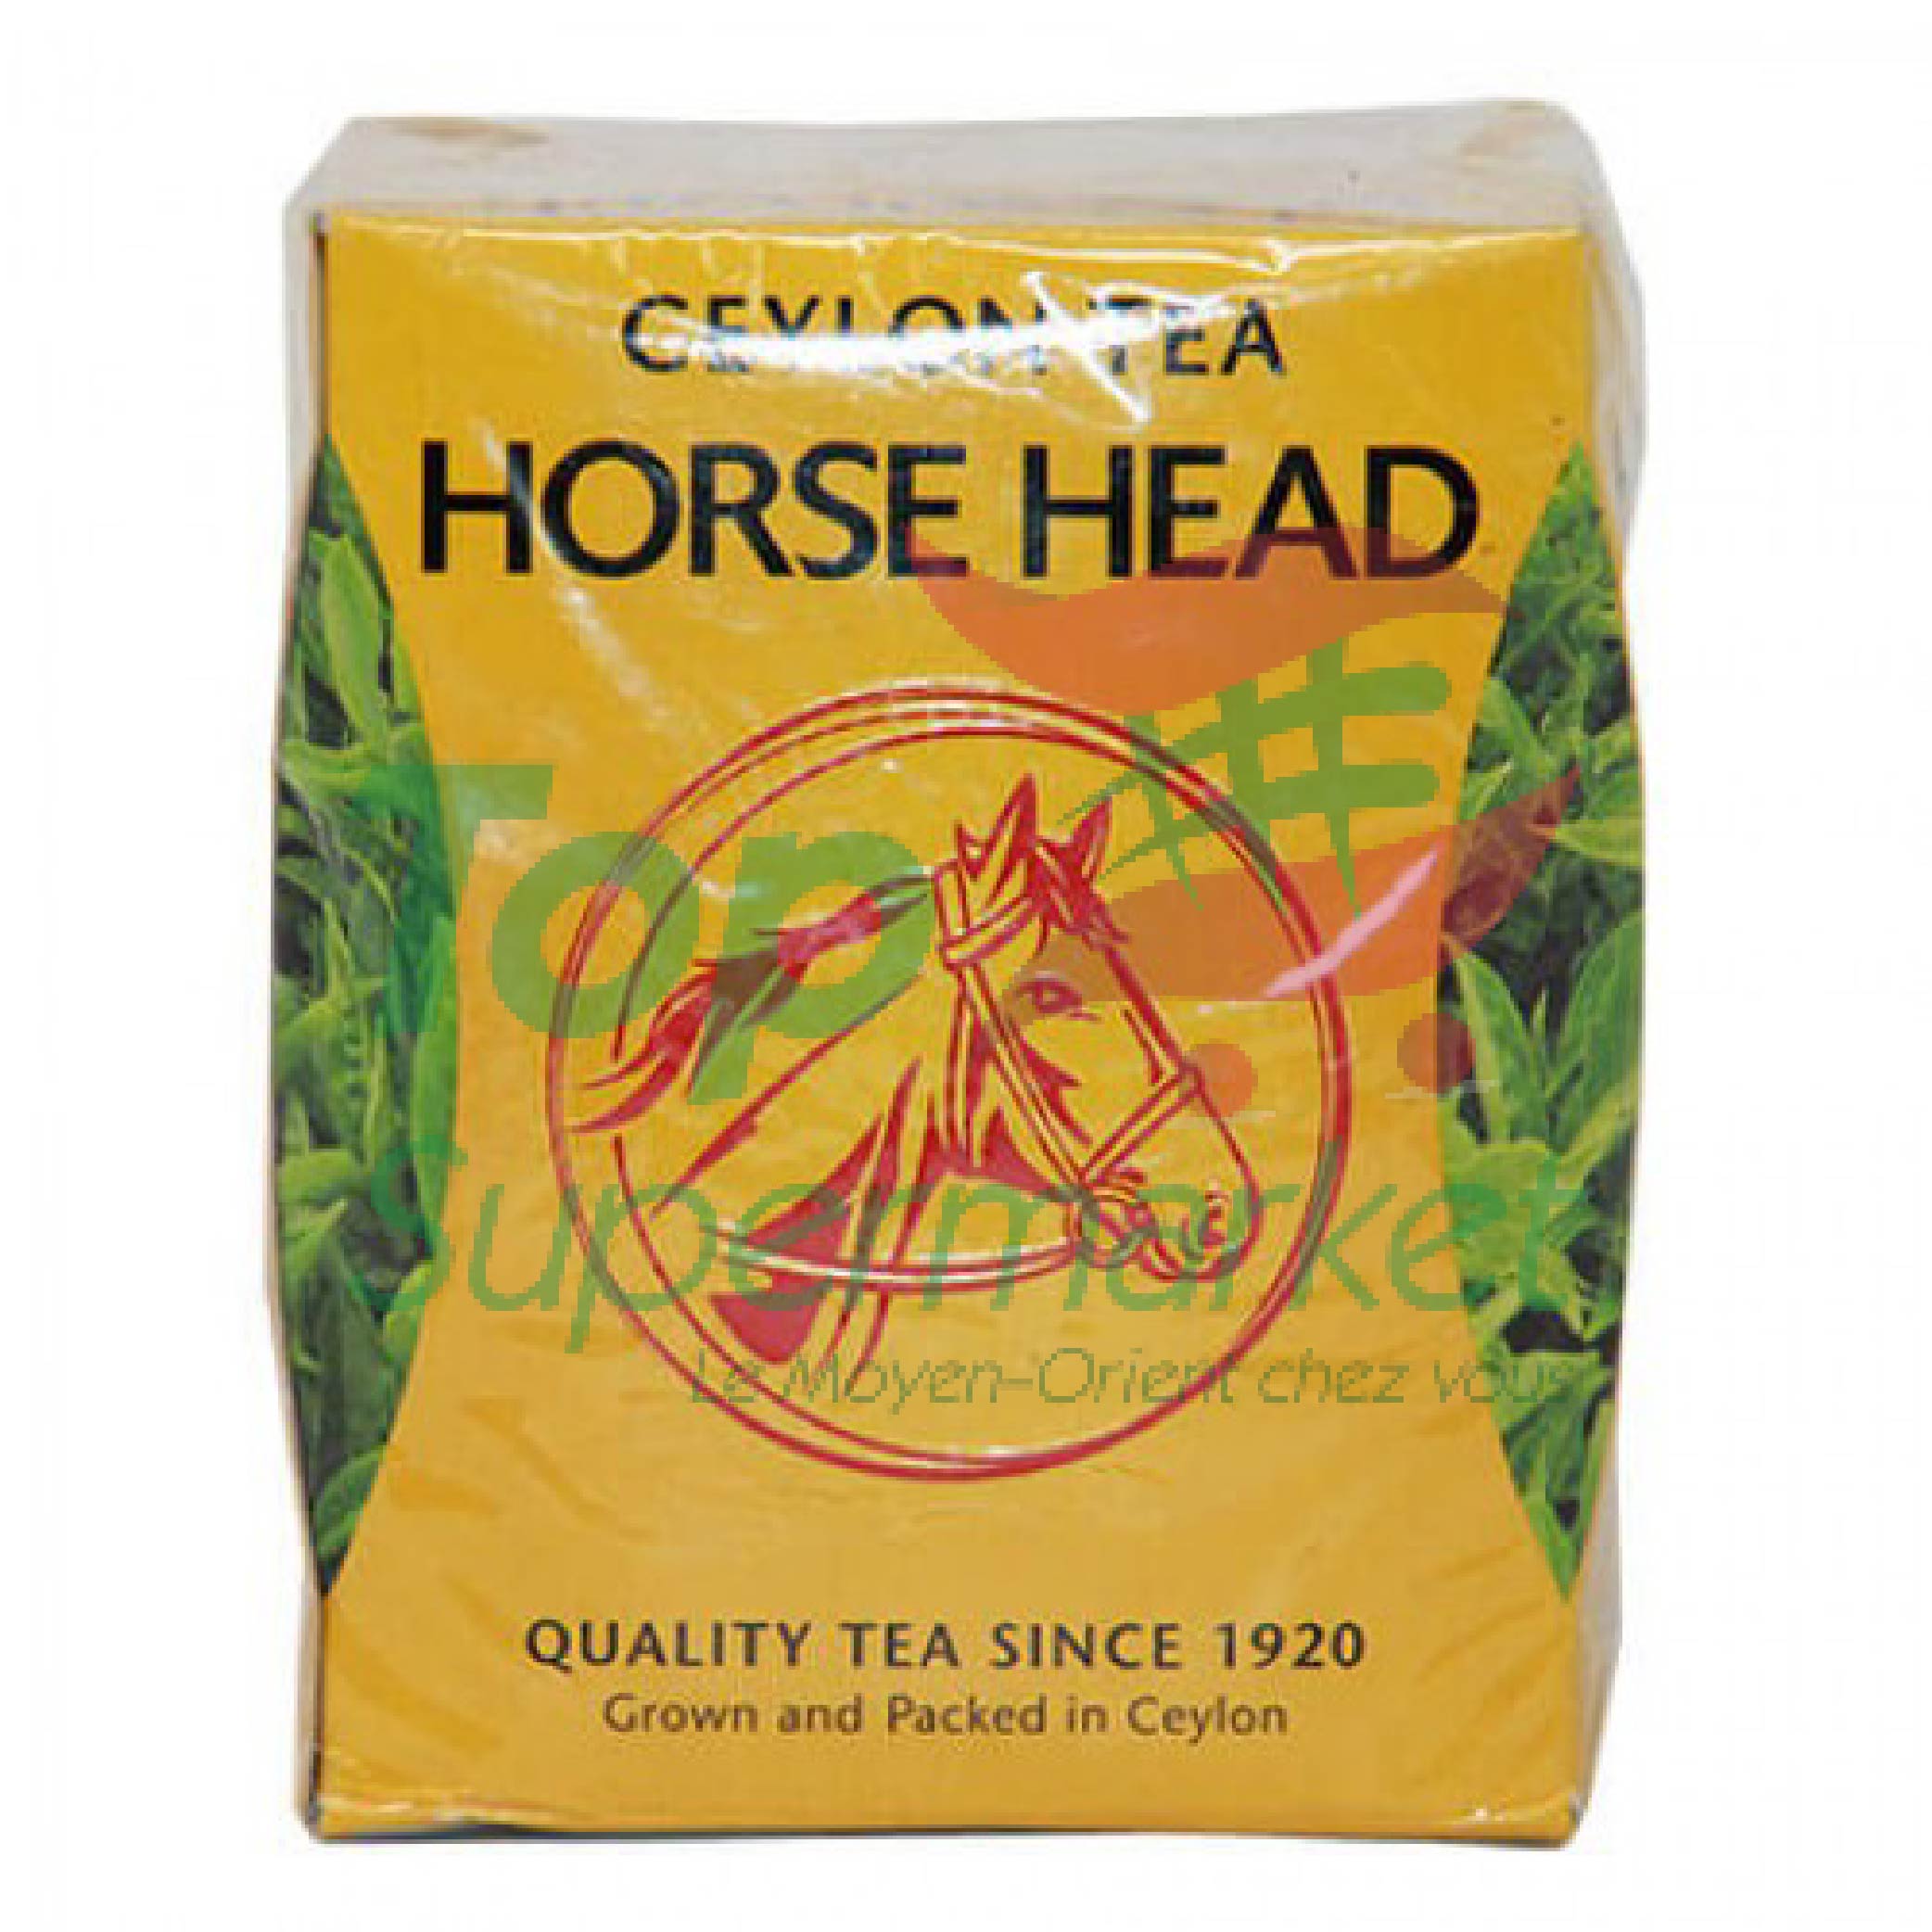 Horse Head Ceylon Tea160